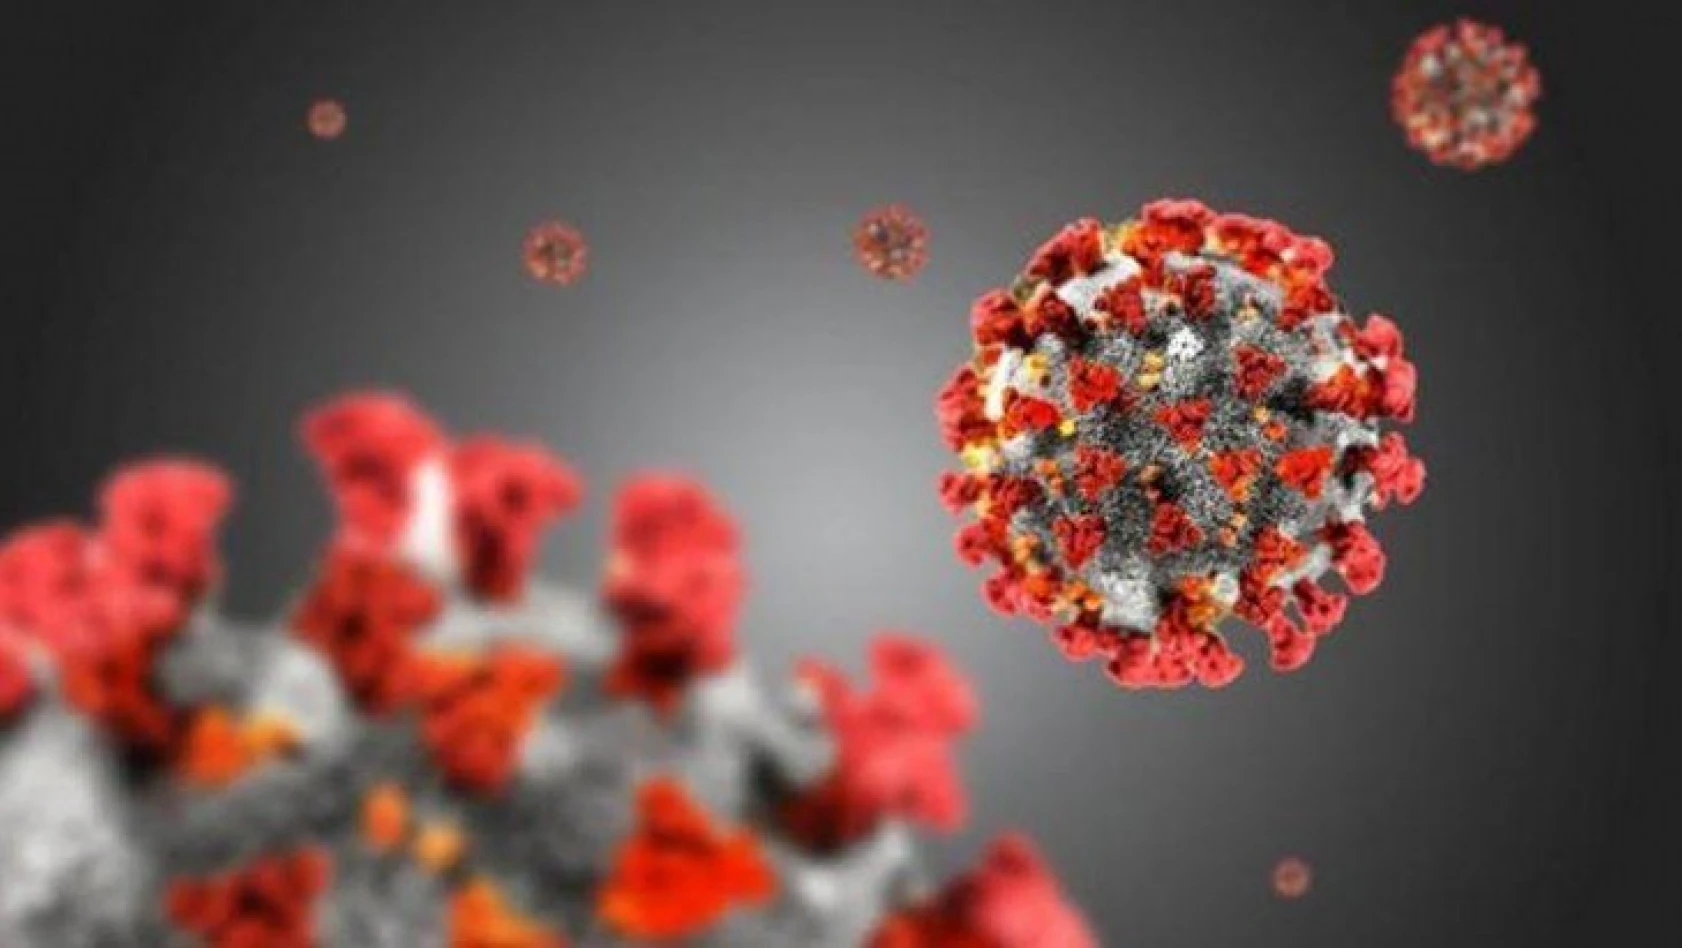 17 Ocak tarihli koronavirüs tablosu